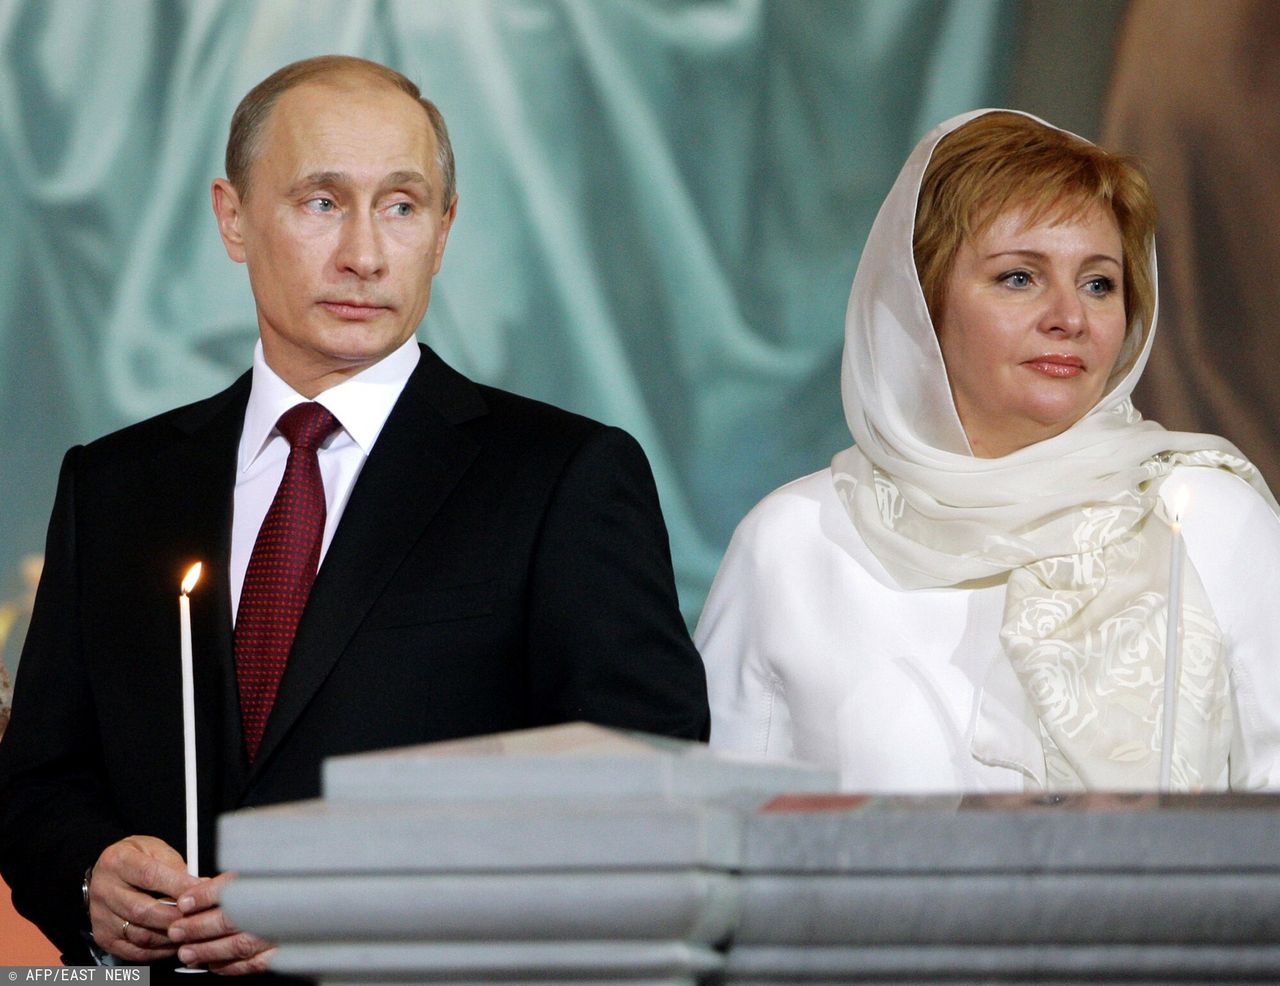 Putin zadbał o byłą żonę. Pieniędzy raczej jej nie zabraknie